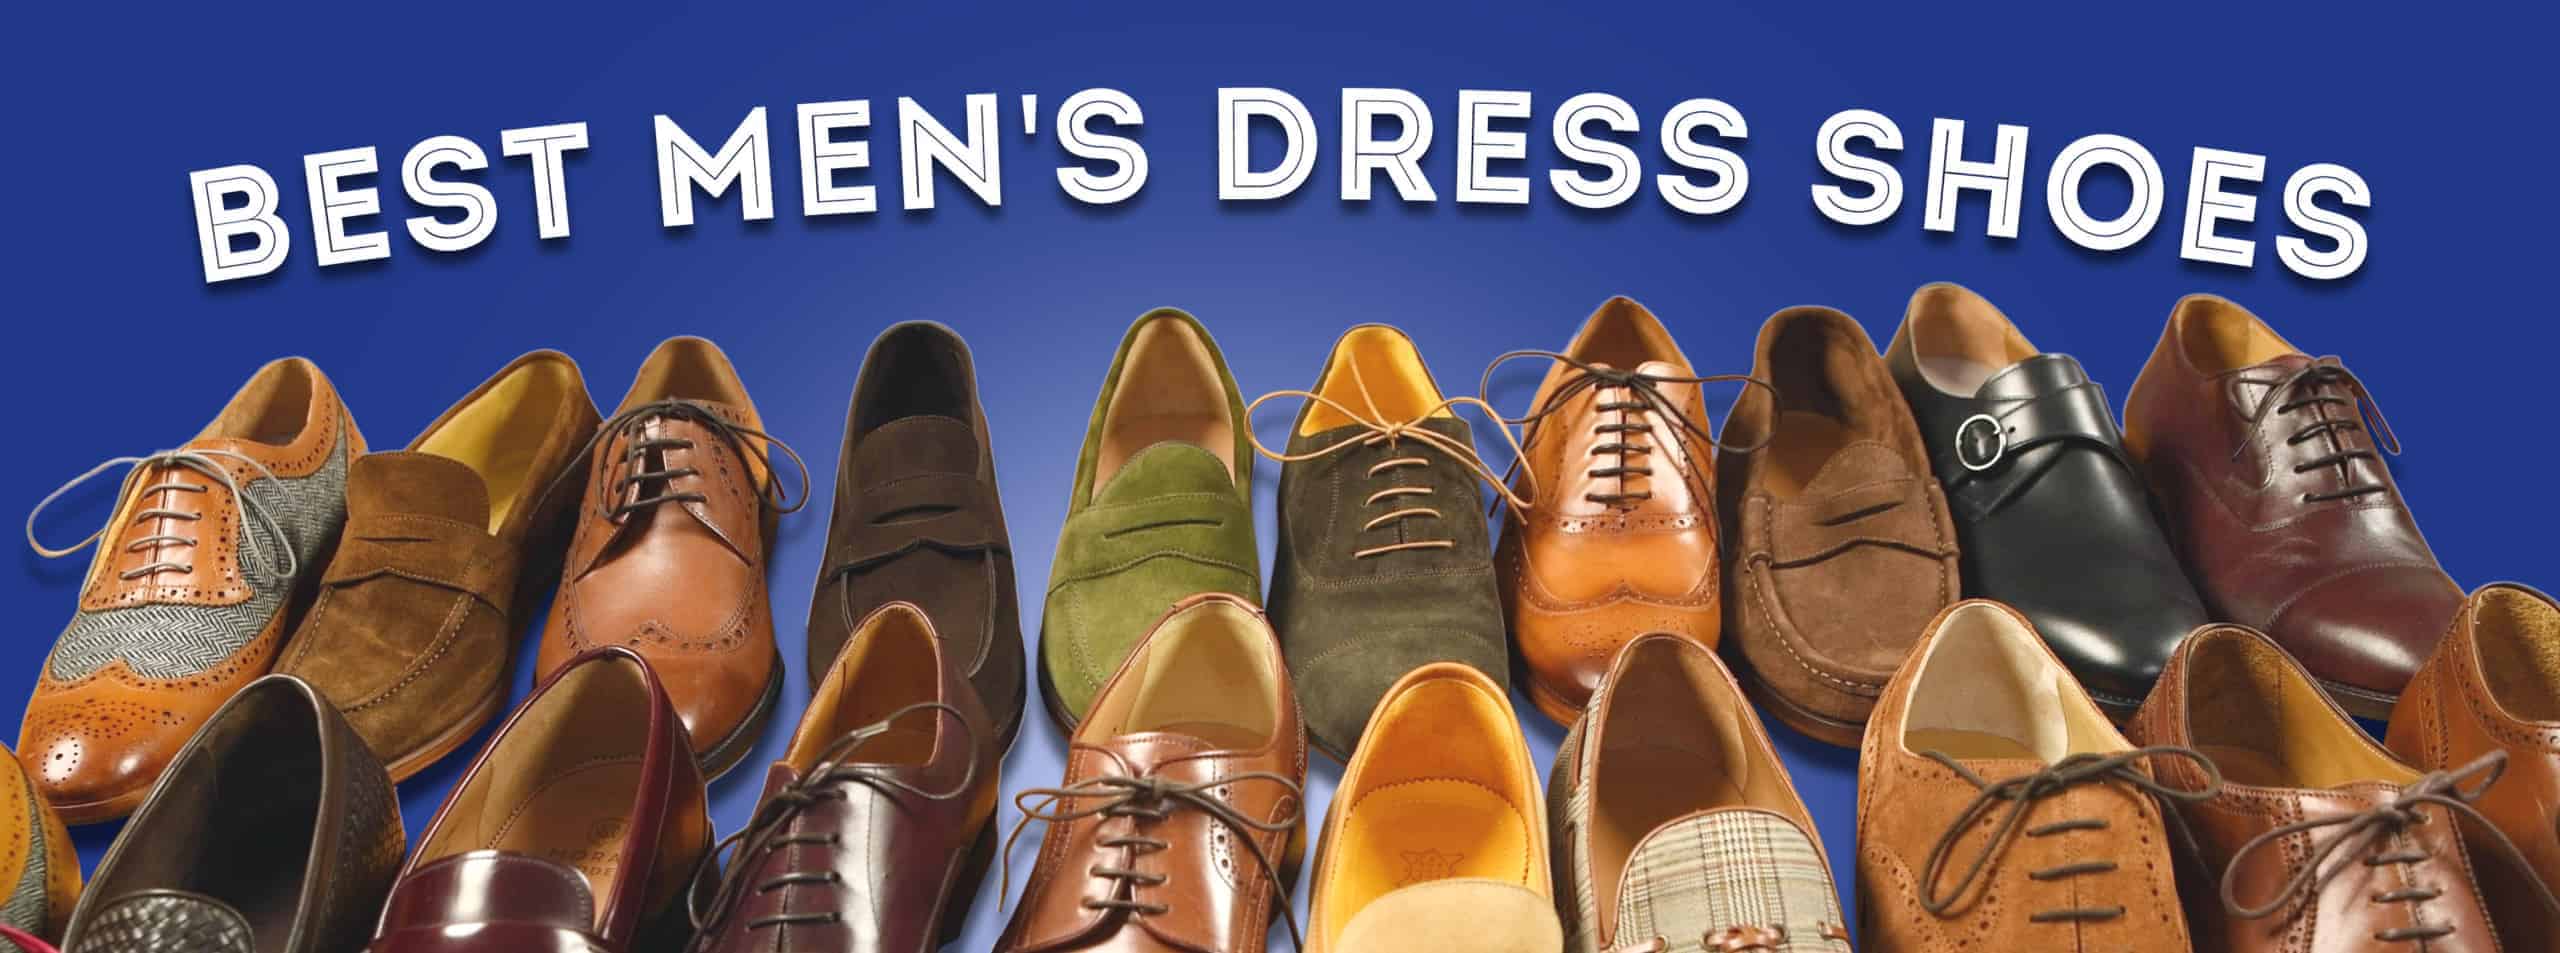 Best Men's Dress Shoes Under $300